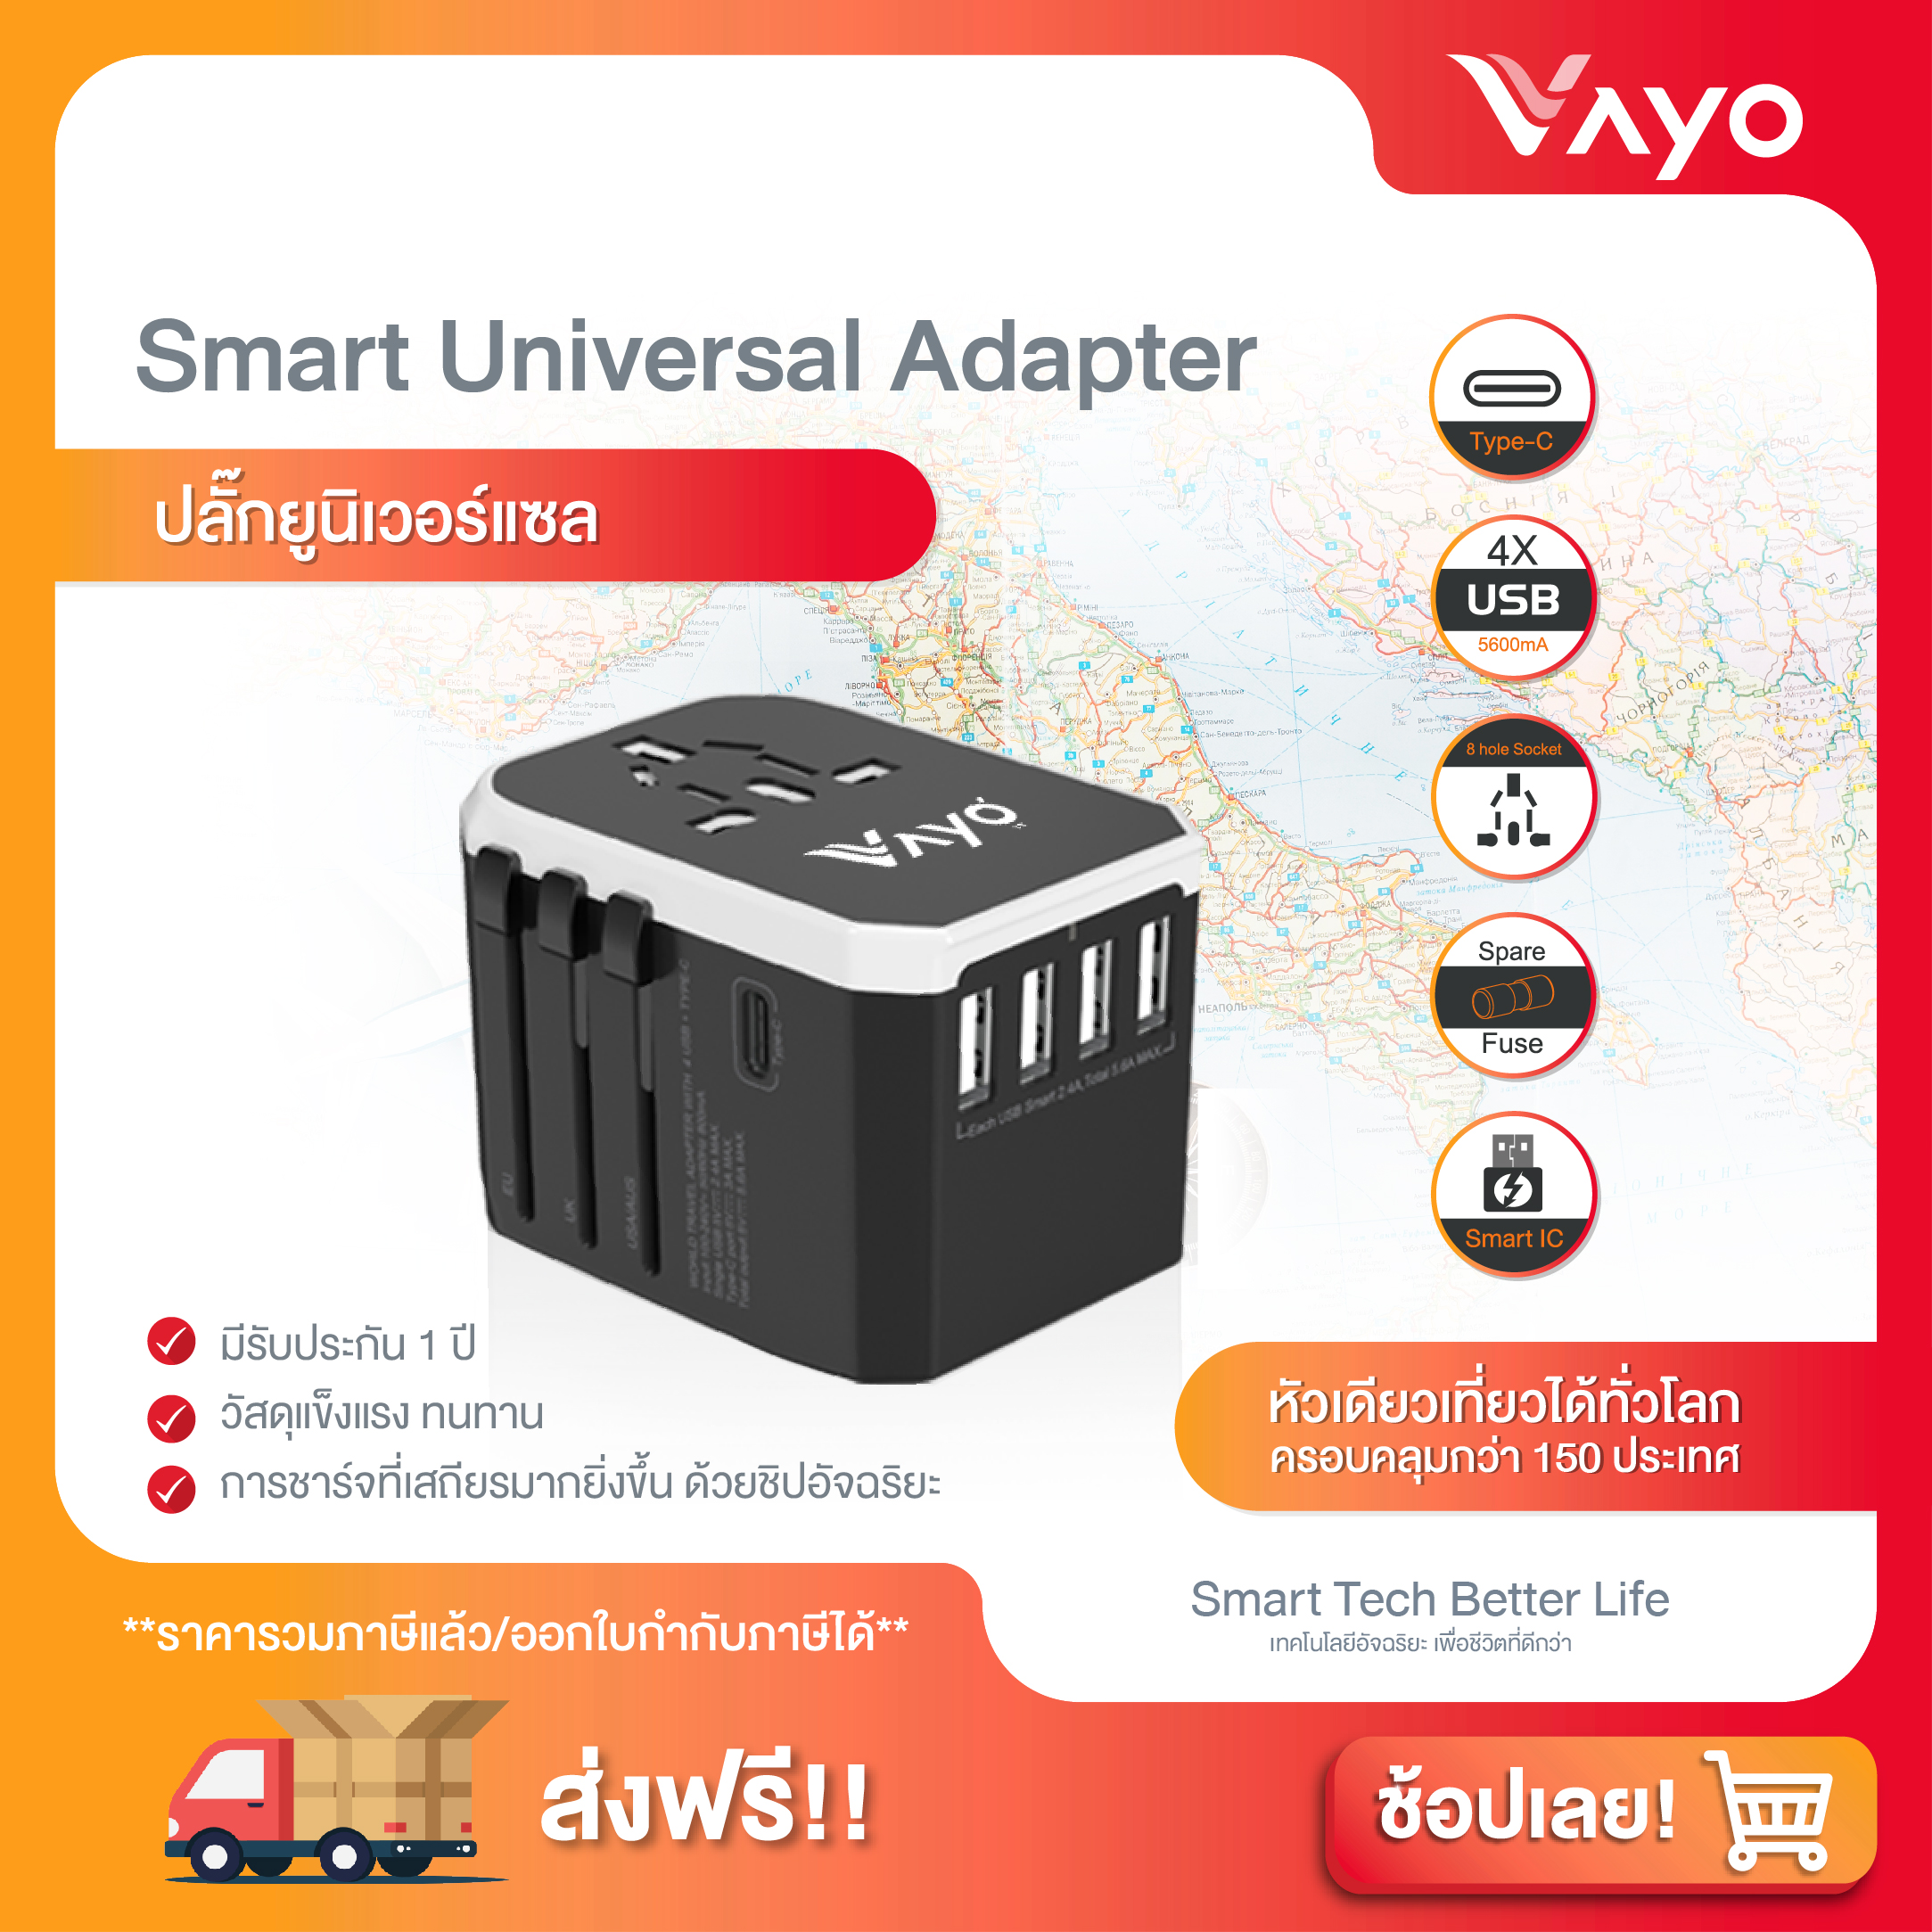 ปลั๊กยูนิเวอร์แซล Smart Universal Adapter แบรนด์ Vayo